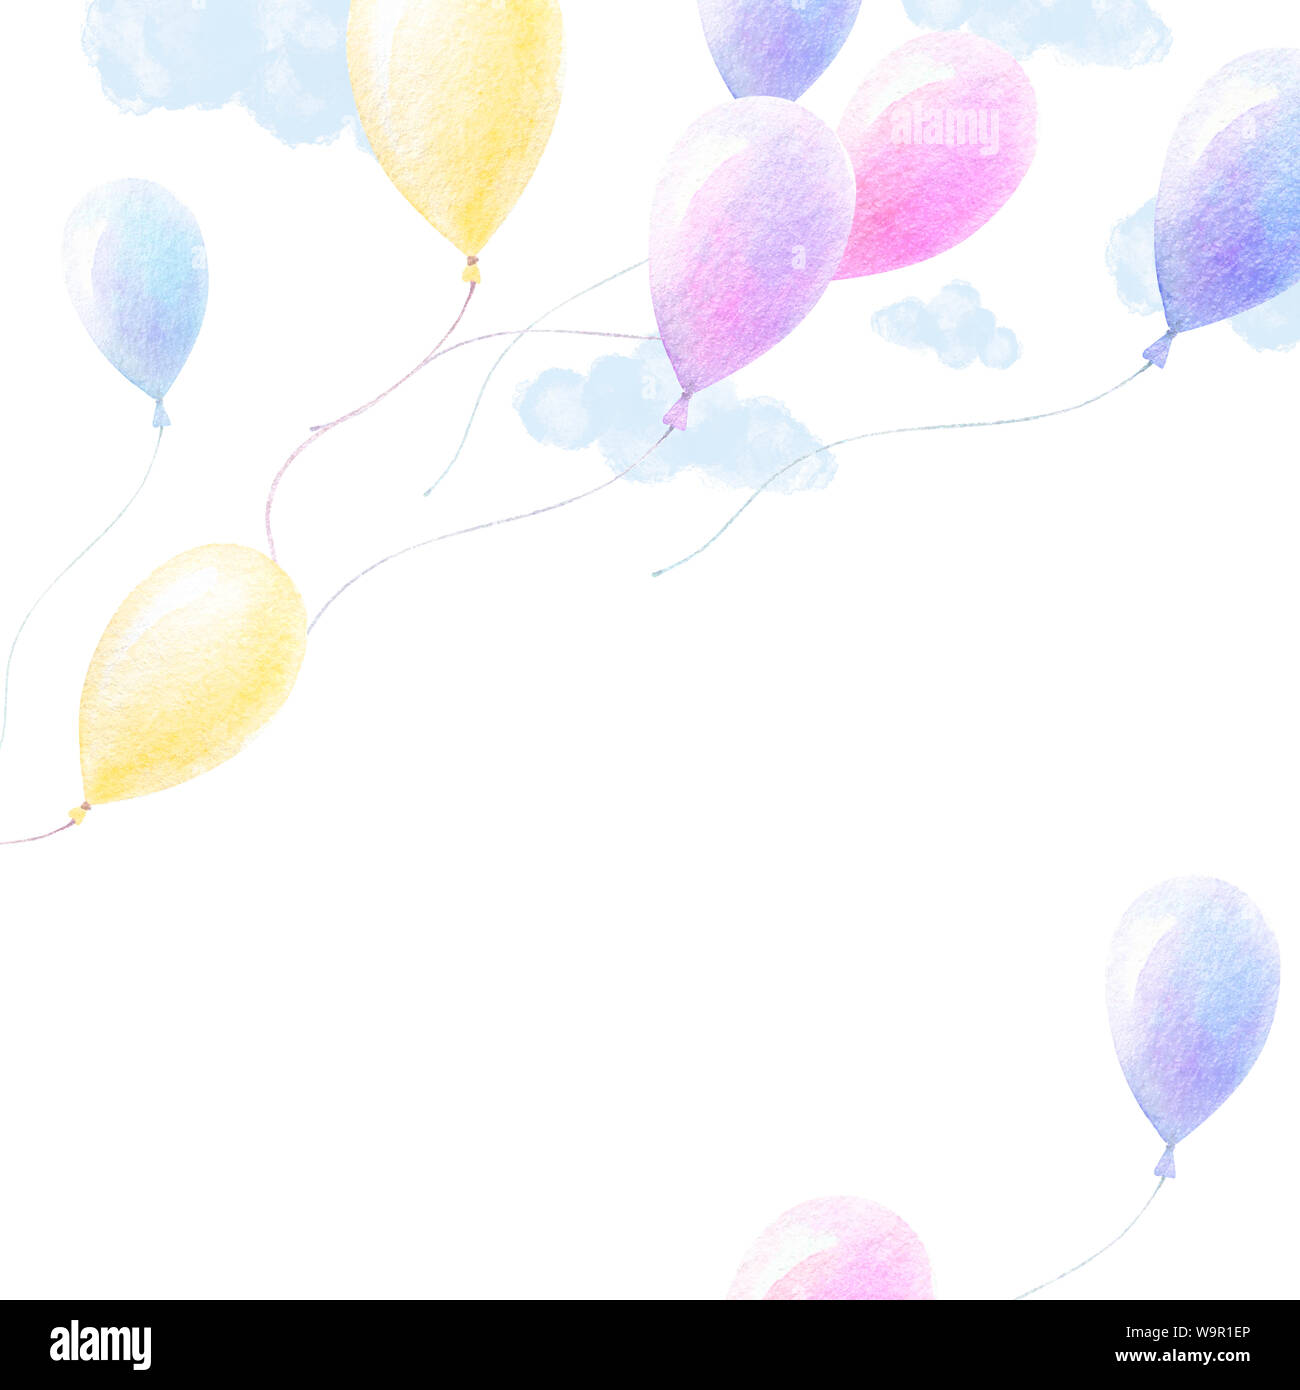 Cute Aquarell. Bunte Ballons fliegen im Himmel, Licht blau Wolken, weißen Hintergrund. Baby Art Plakat Hintergrund. Druckqualität. Aquarell Kinder Stockfoto